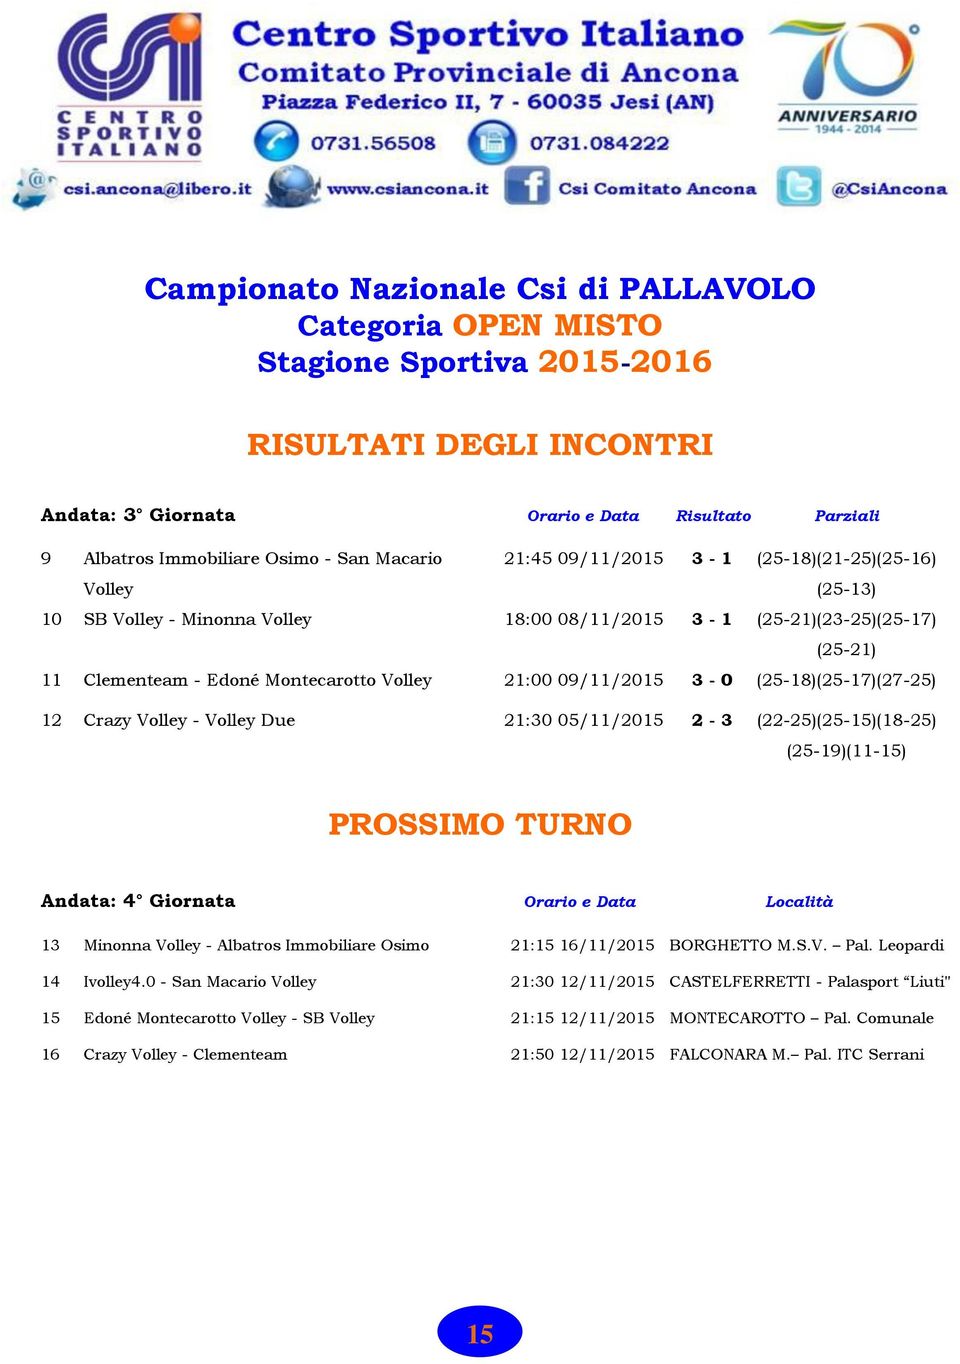 09/11/2015 3-0 (25-18)(25-17)(27-25) 12 Crazy Volley - Volley Due 21:30 05/11/2015 2-3 (22-25)(25-15)(18-25) (25-19)(11-15) PROSSIMO TURNO Andata: 4 Giornata Orario e Data Località 13 Minonna Volley